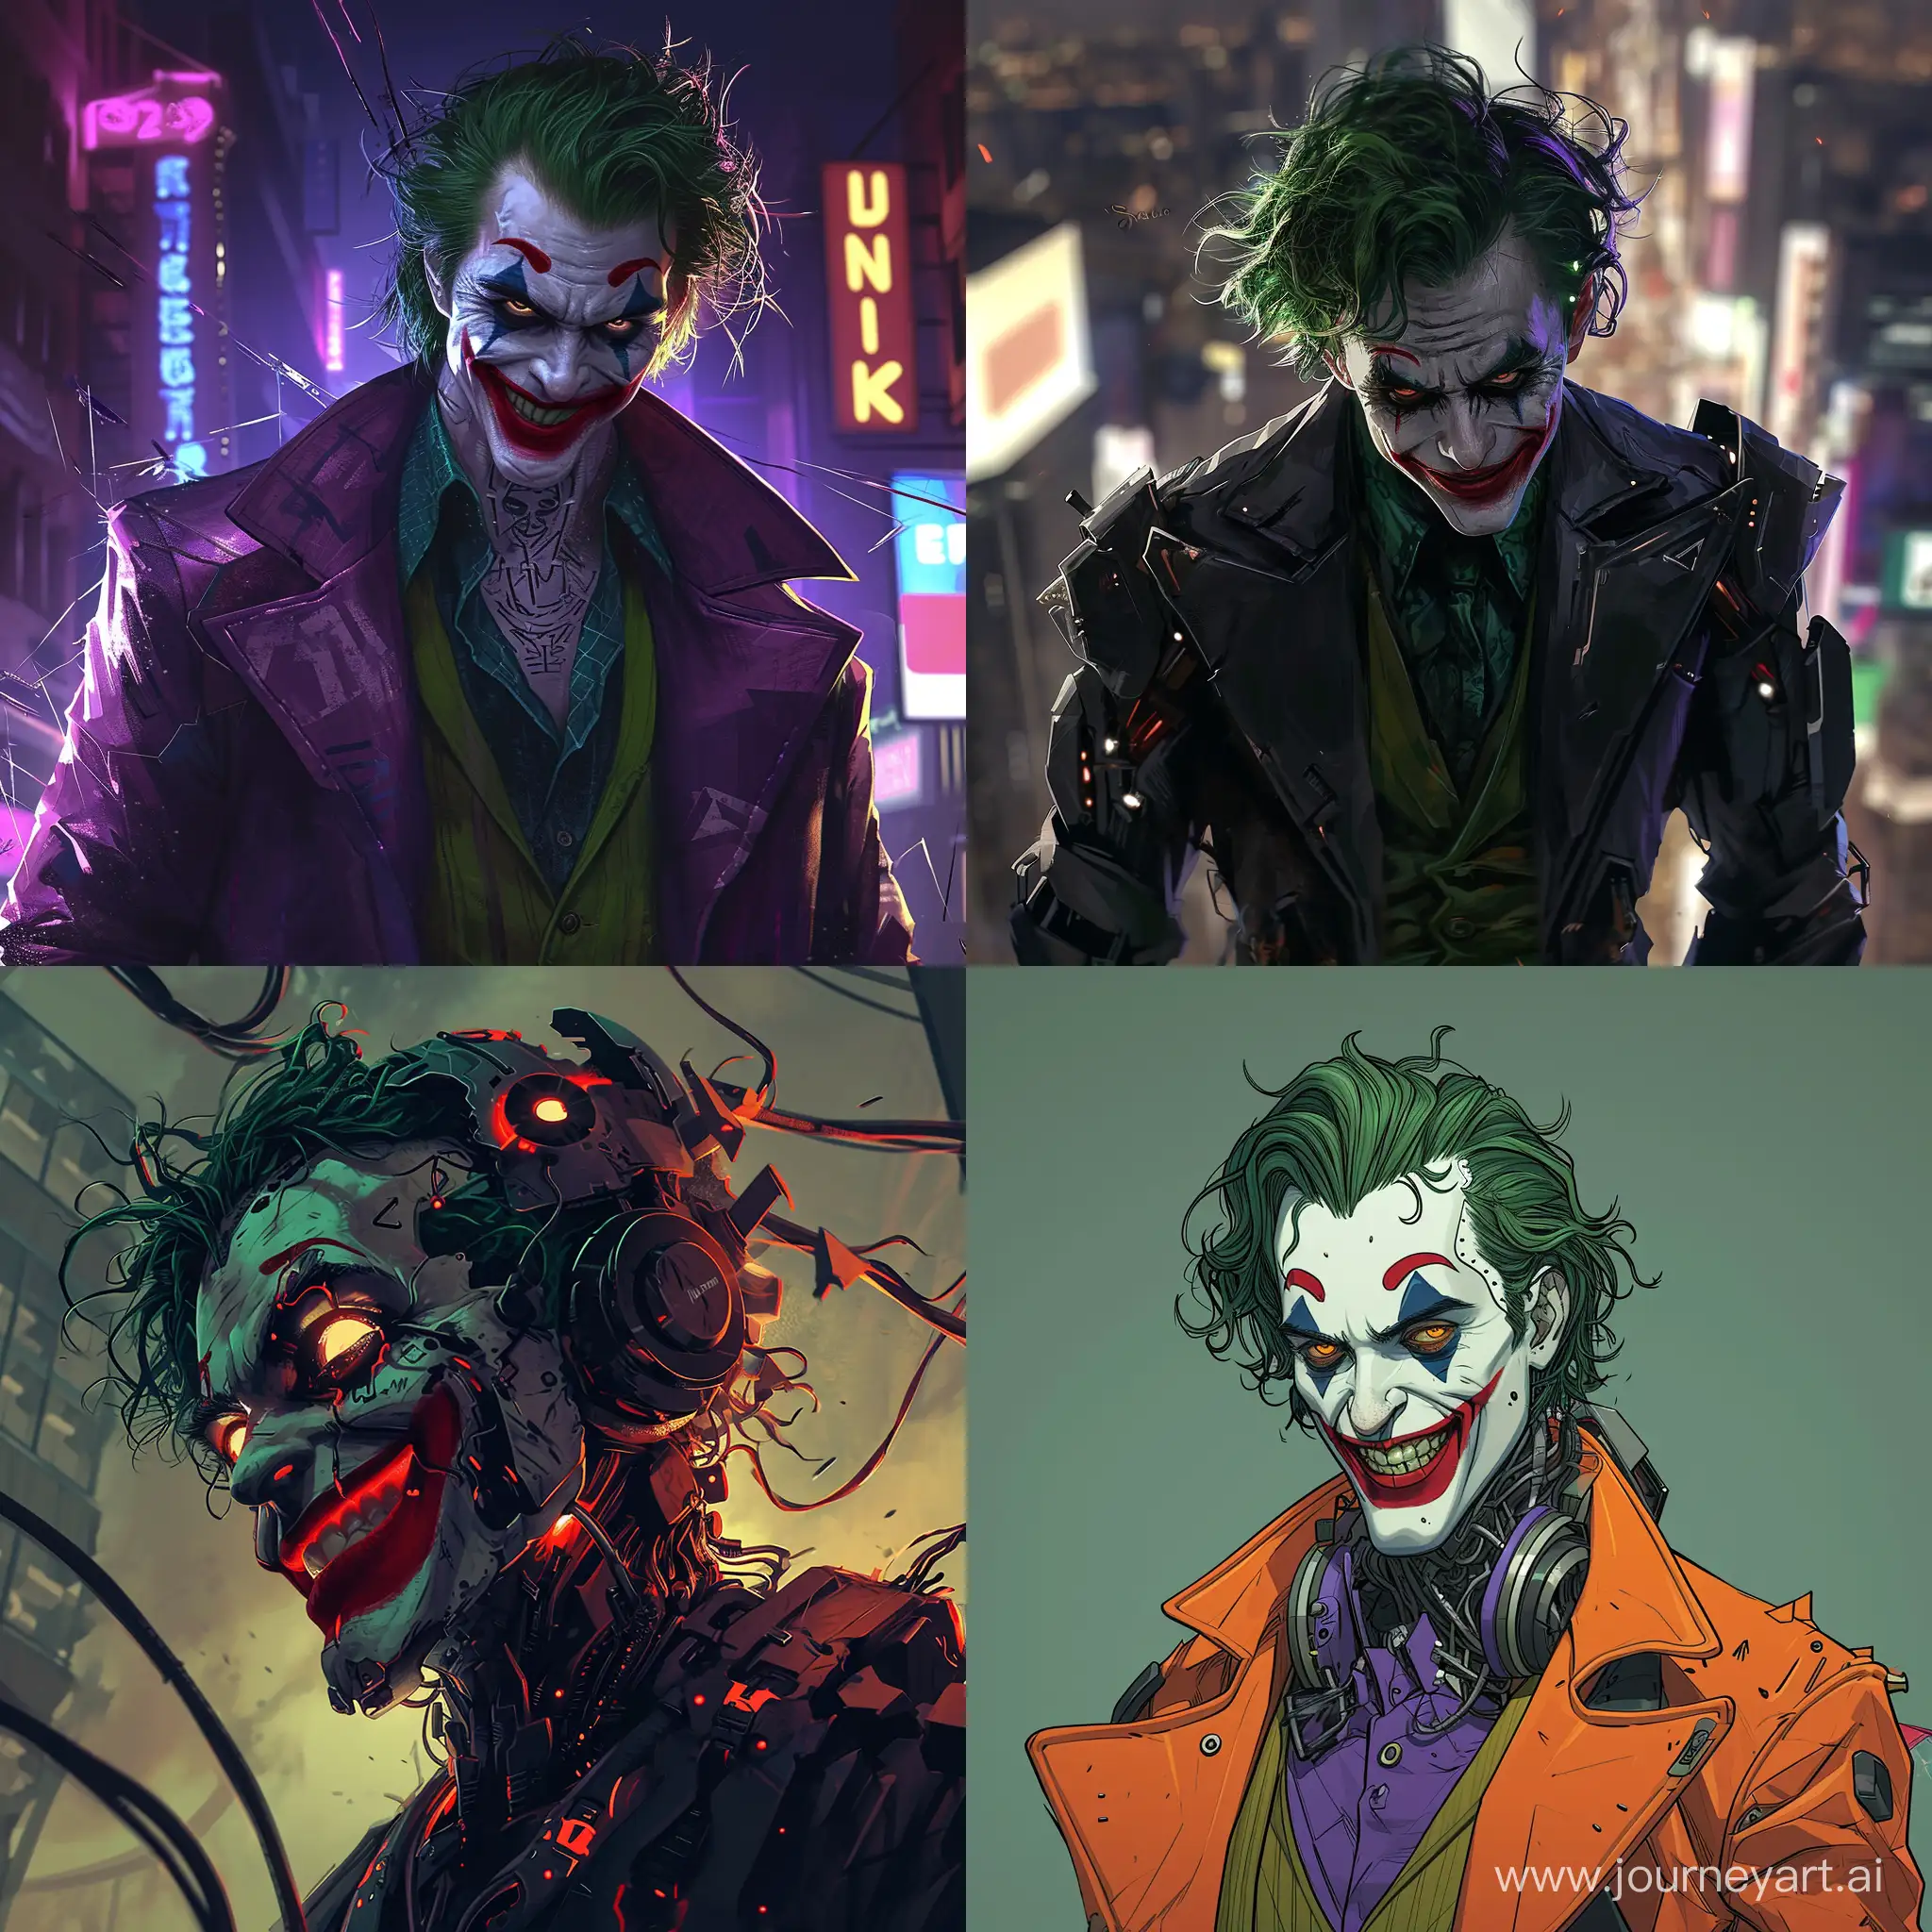 Futuristic-DC-Joker-in-2020s-Ultramodern-Style